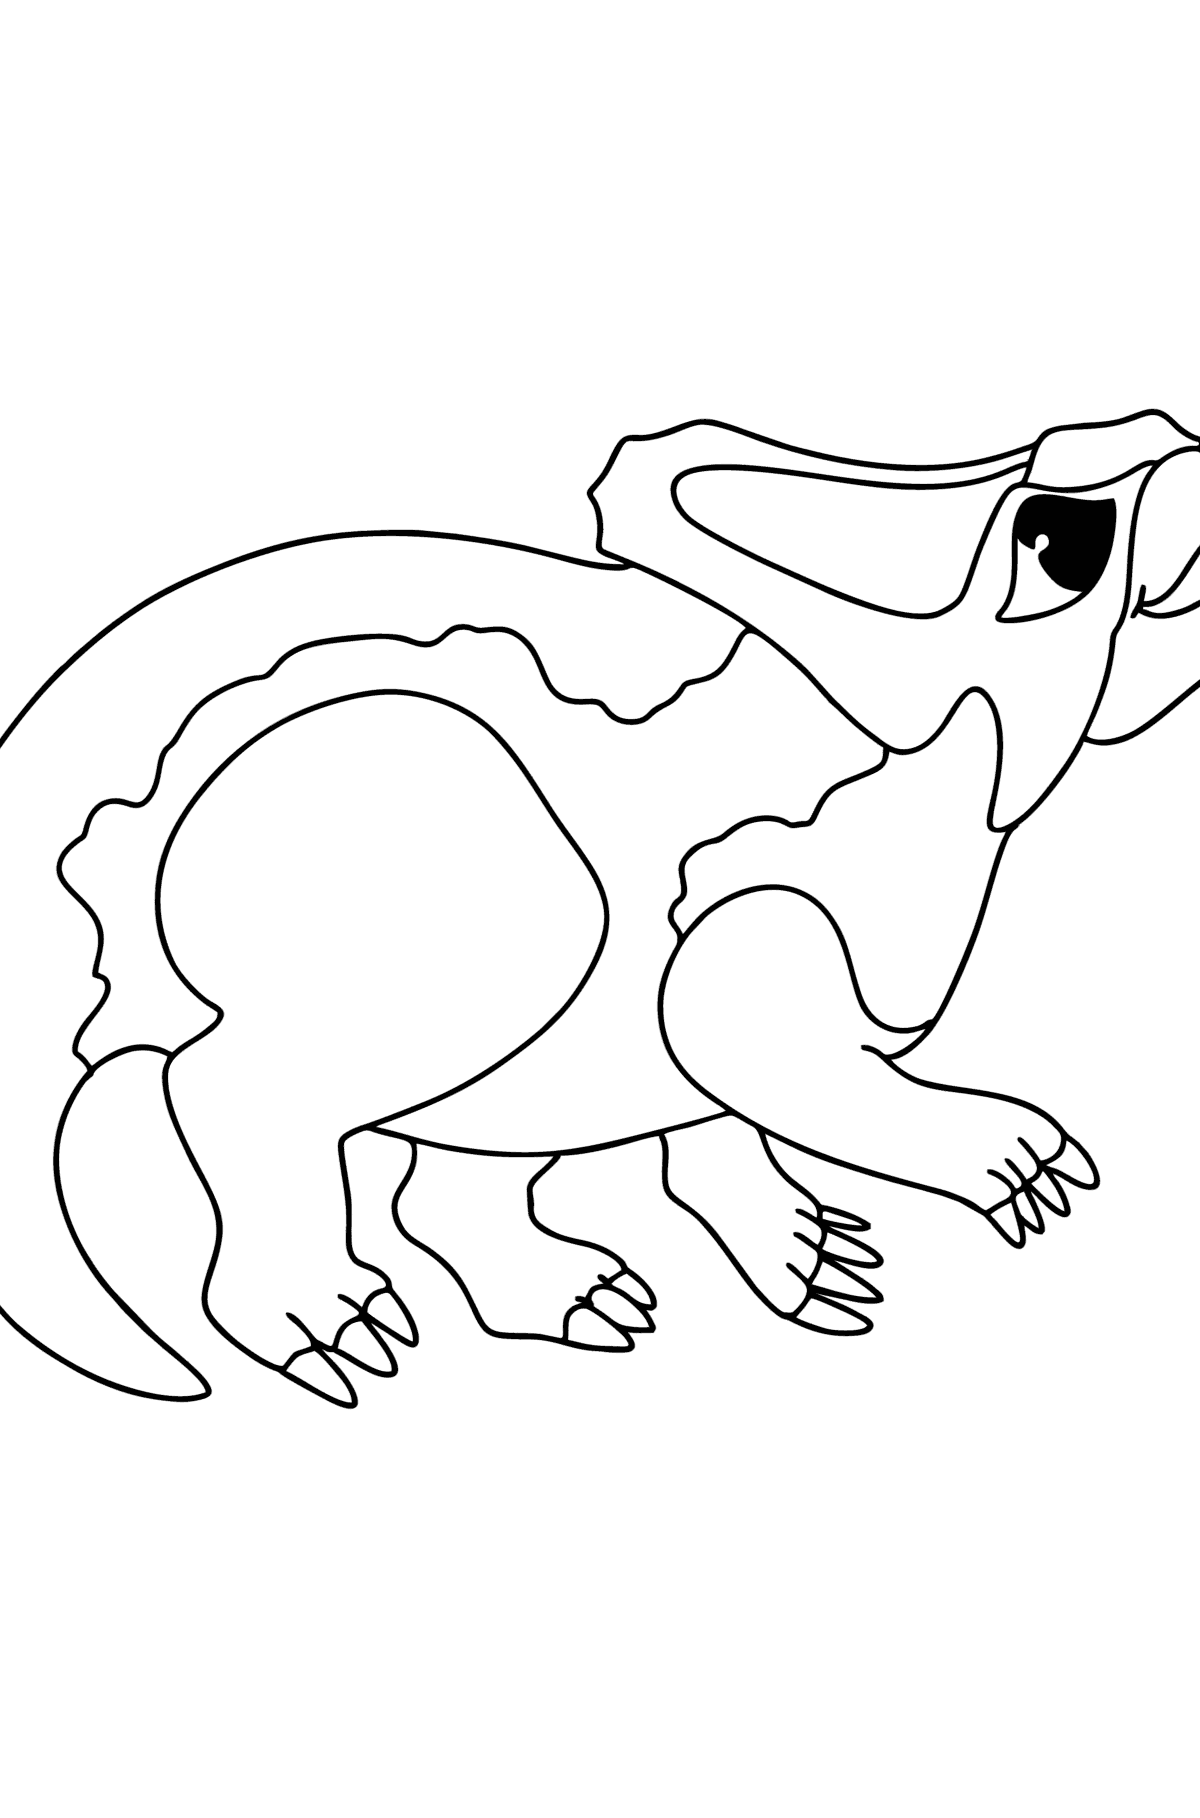 Målarbild protoceratops - Målarbilder För barn